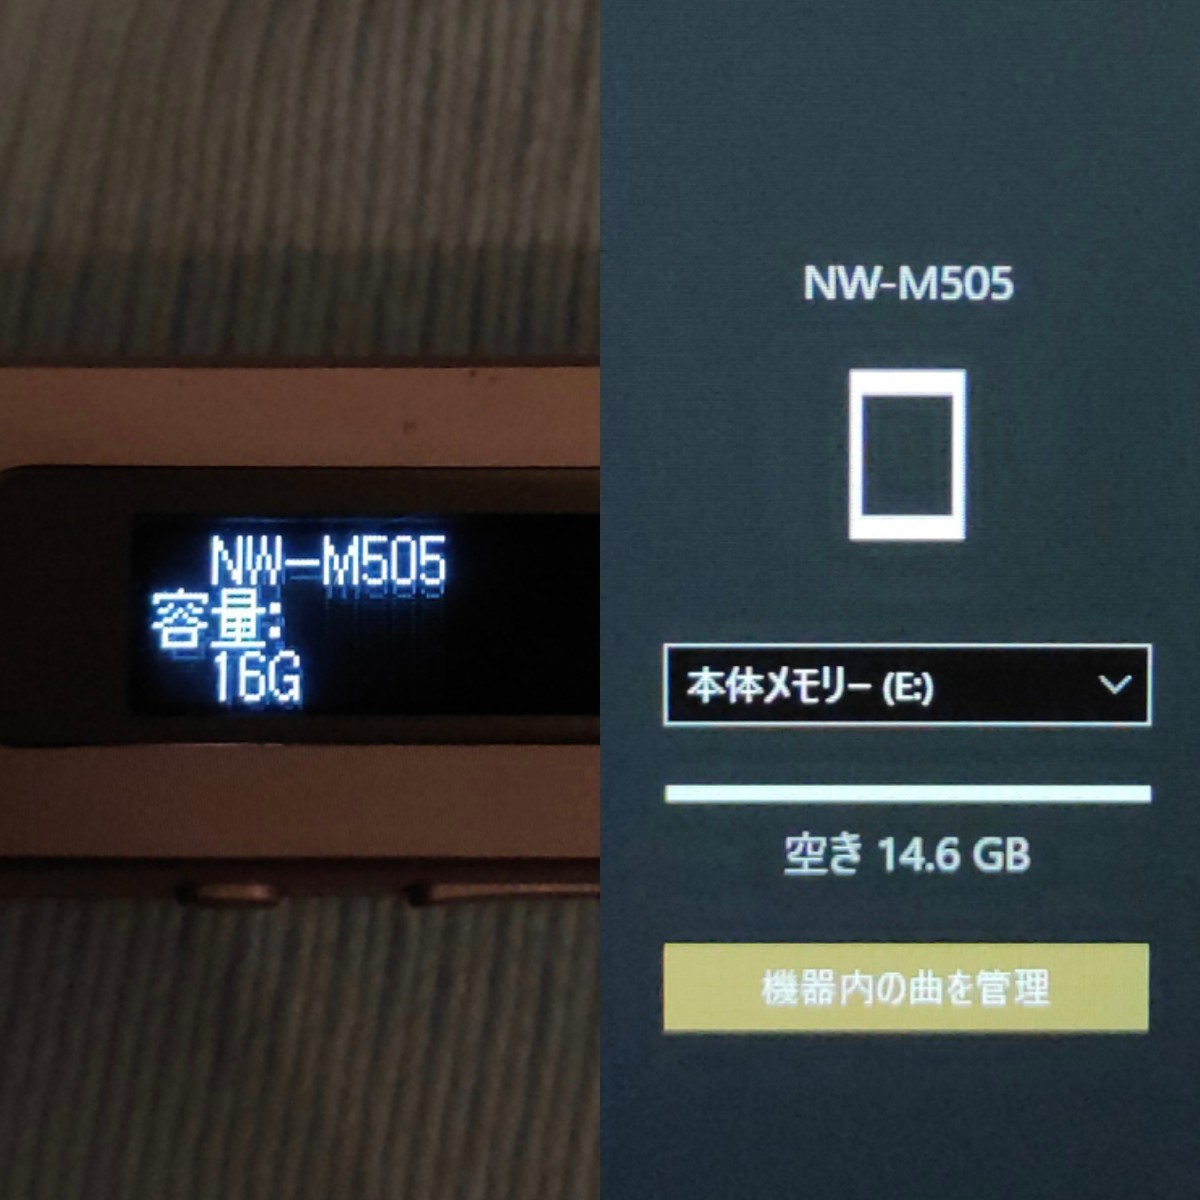 5052609【正常動作品】SONY NW-M505 WALKMAN 16GB ソニー ウォークマン スティック型_画像5